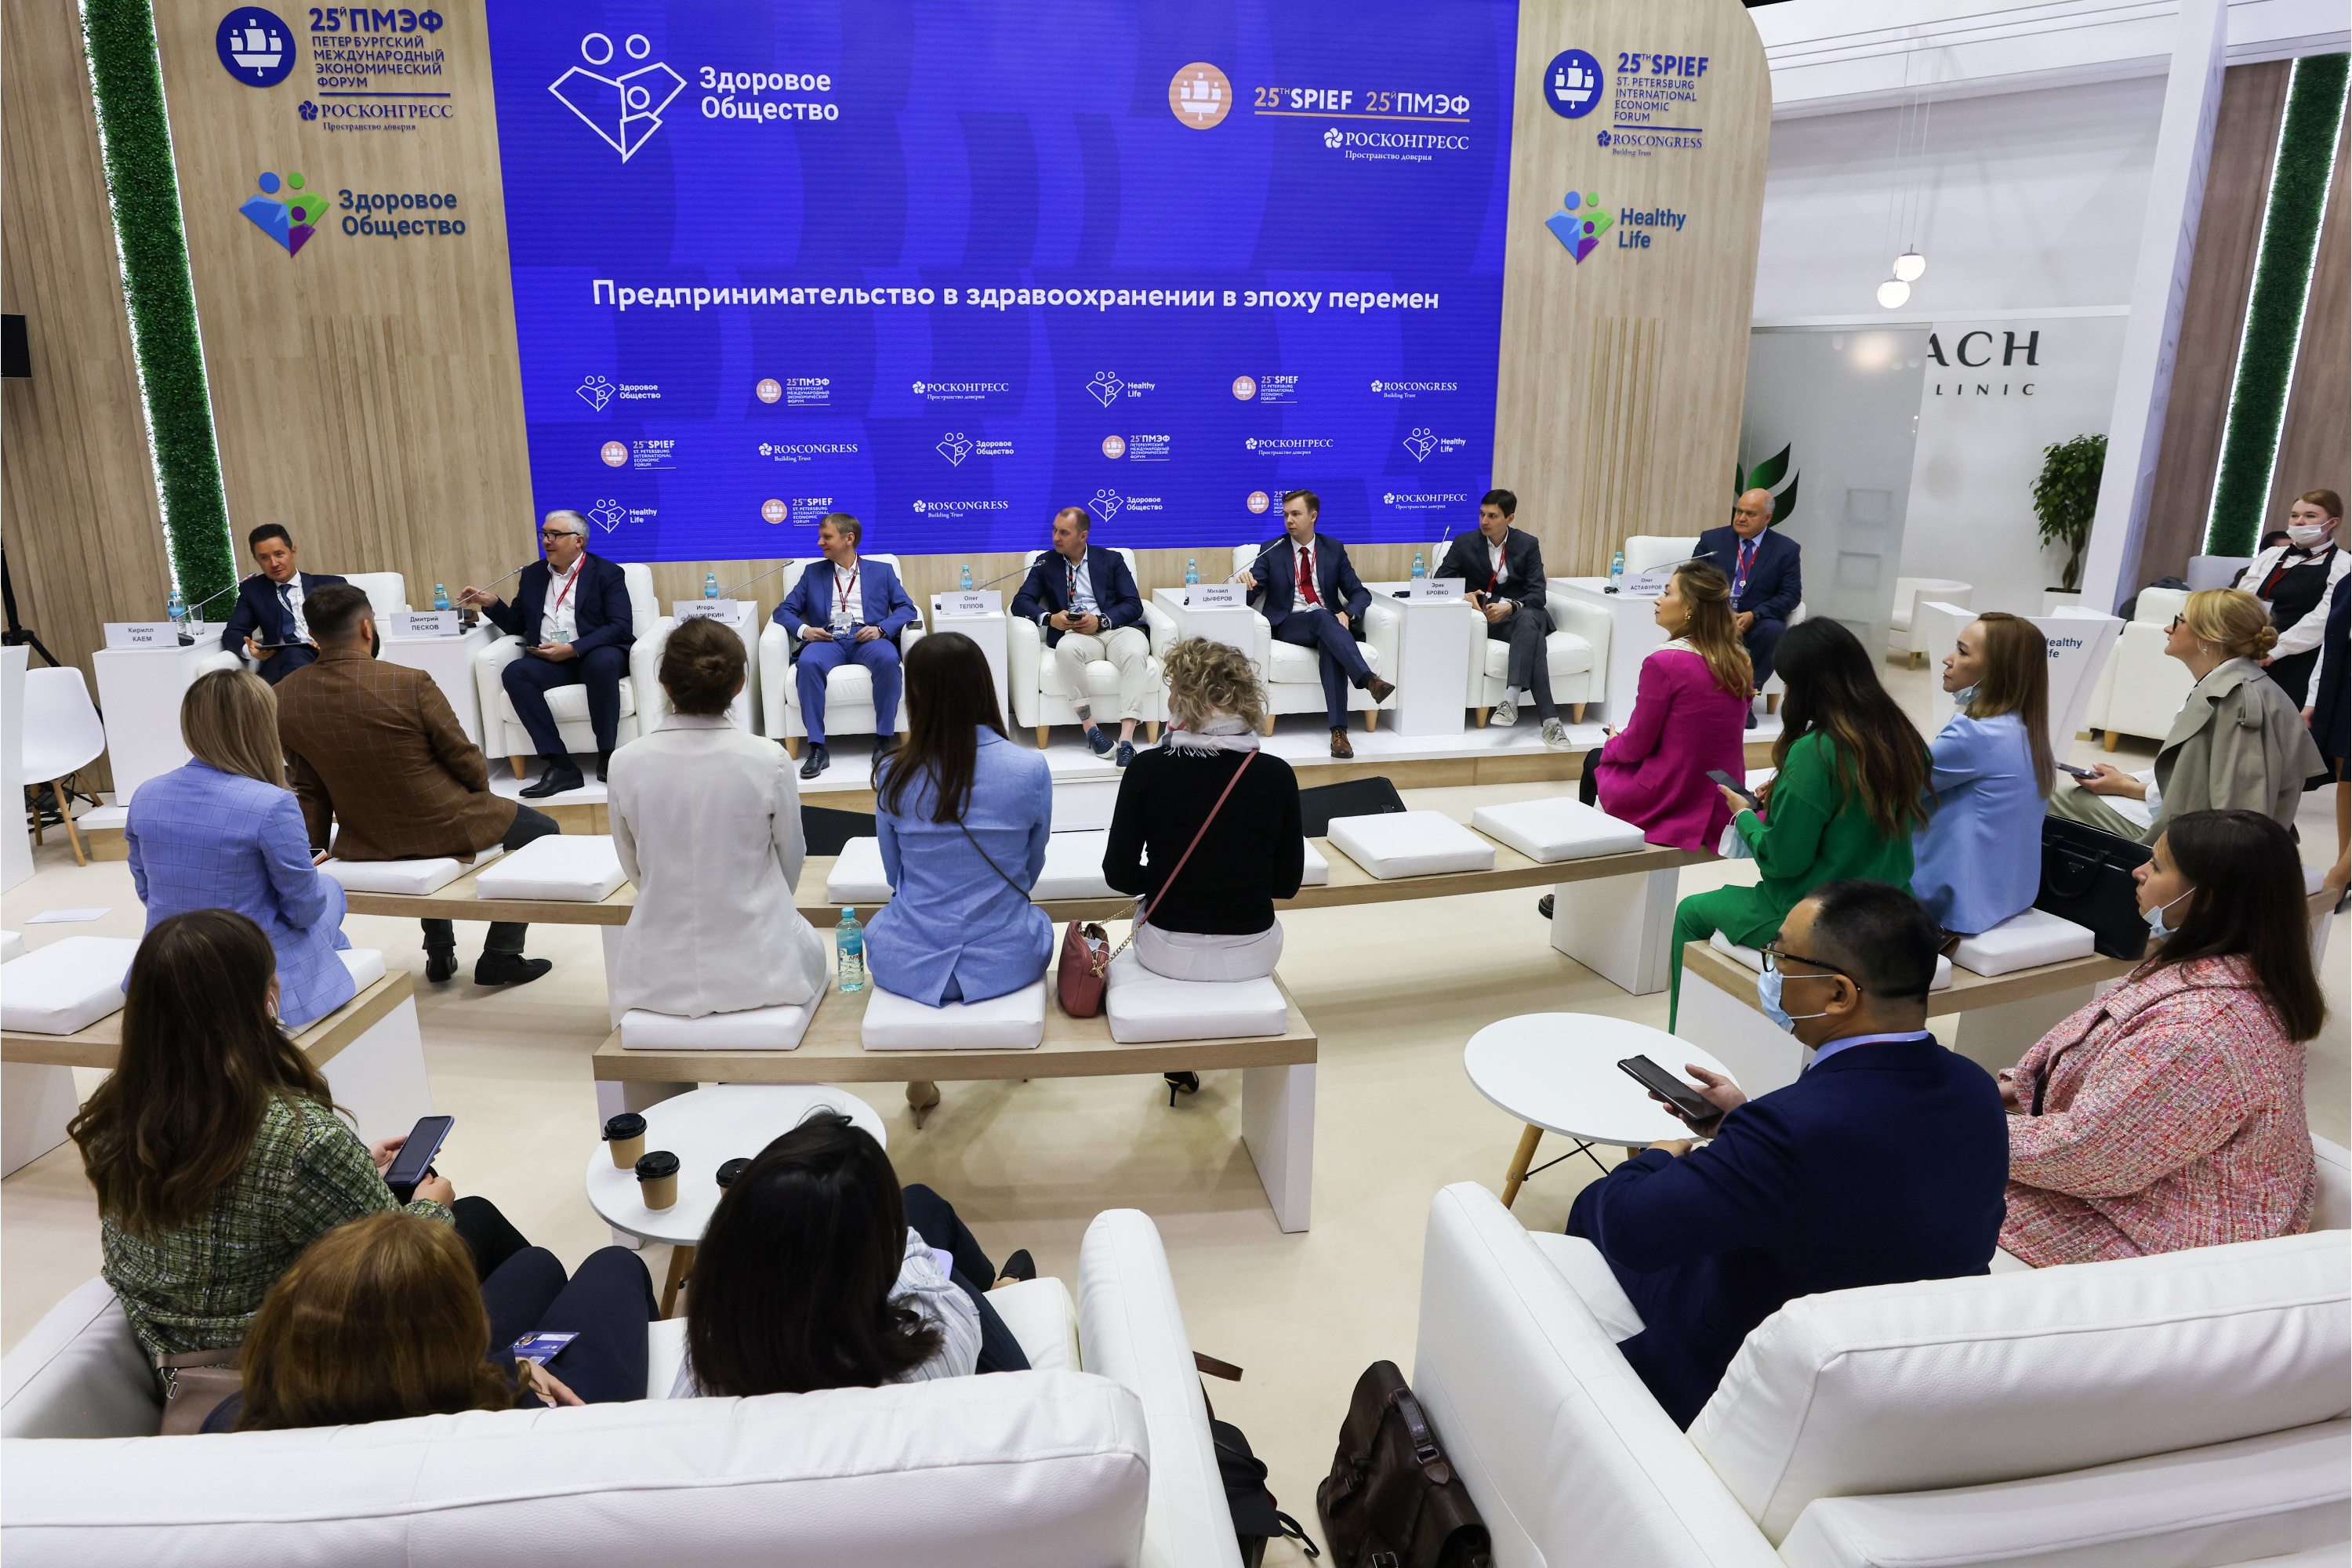 Участники во время панельной дискуссии «Предпринимательство в здравоохранении в эпоху перемен» в рамках XXV Петербургского международного экономического форума.